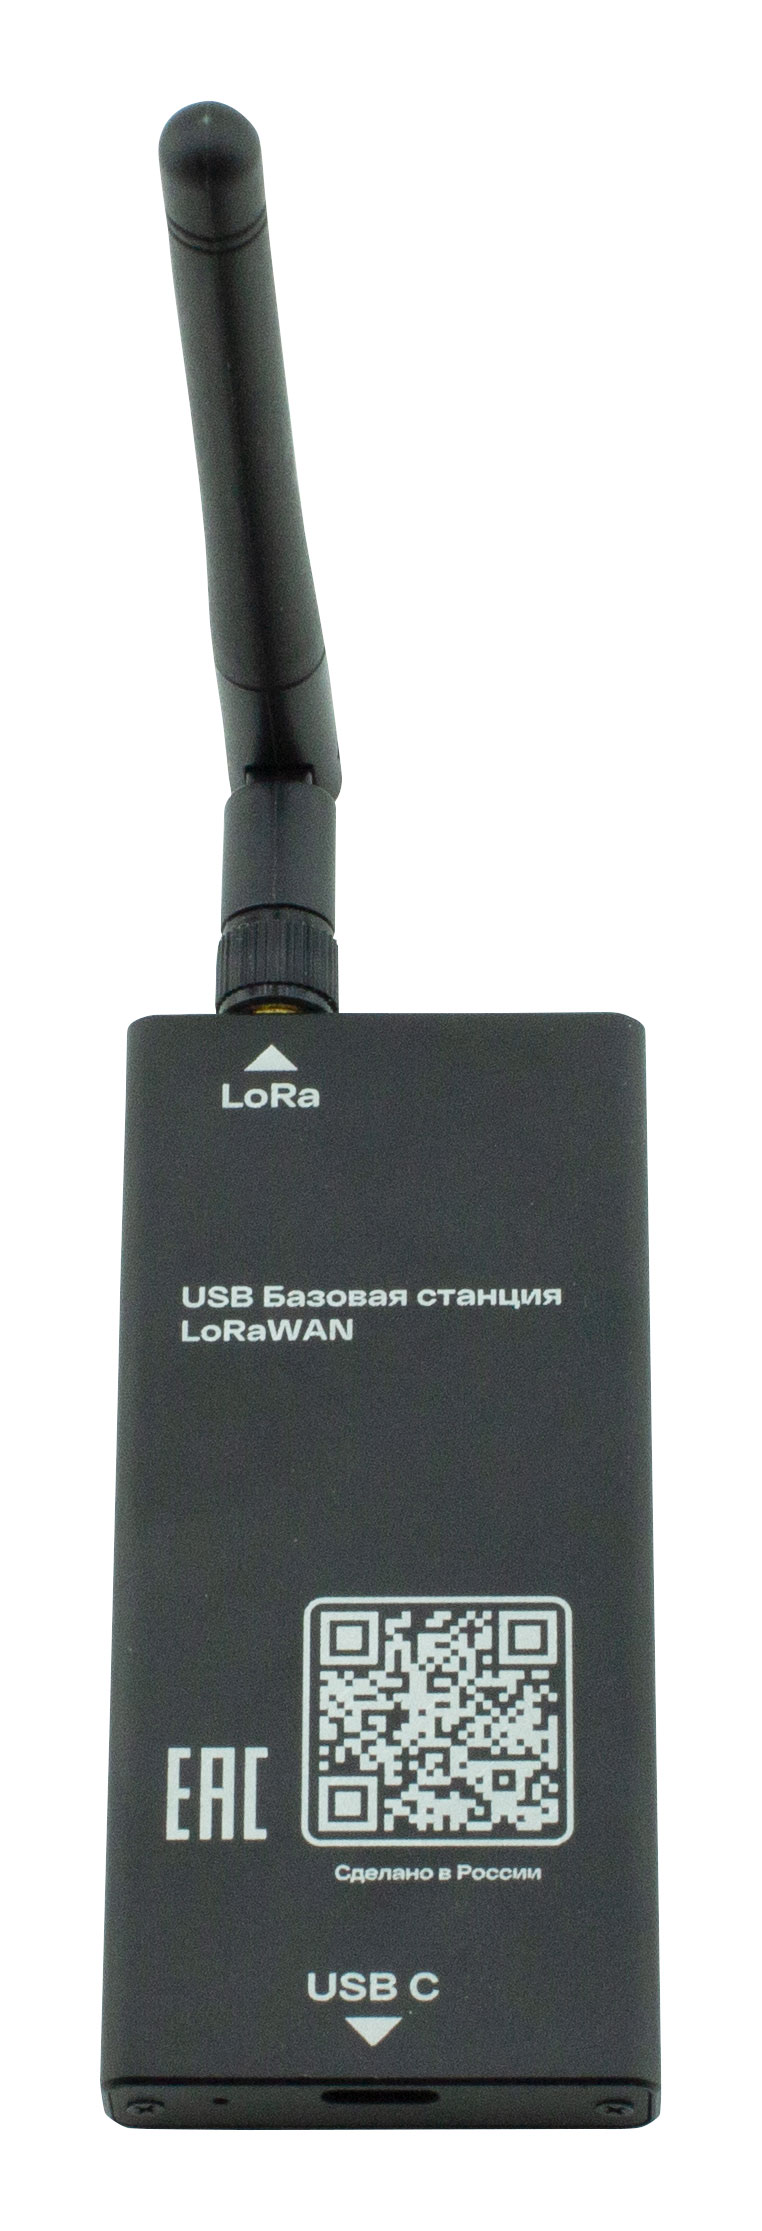 ATB-LW-USB-GATEWAY Мини базовая станция Lora